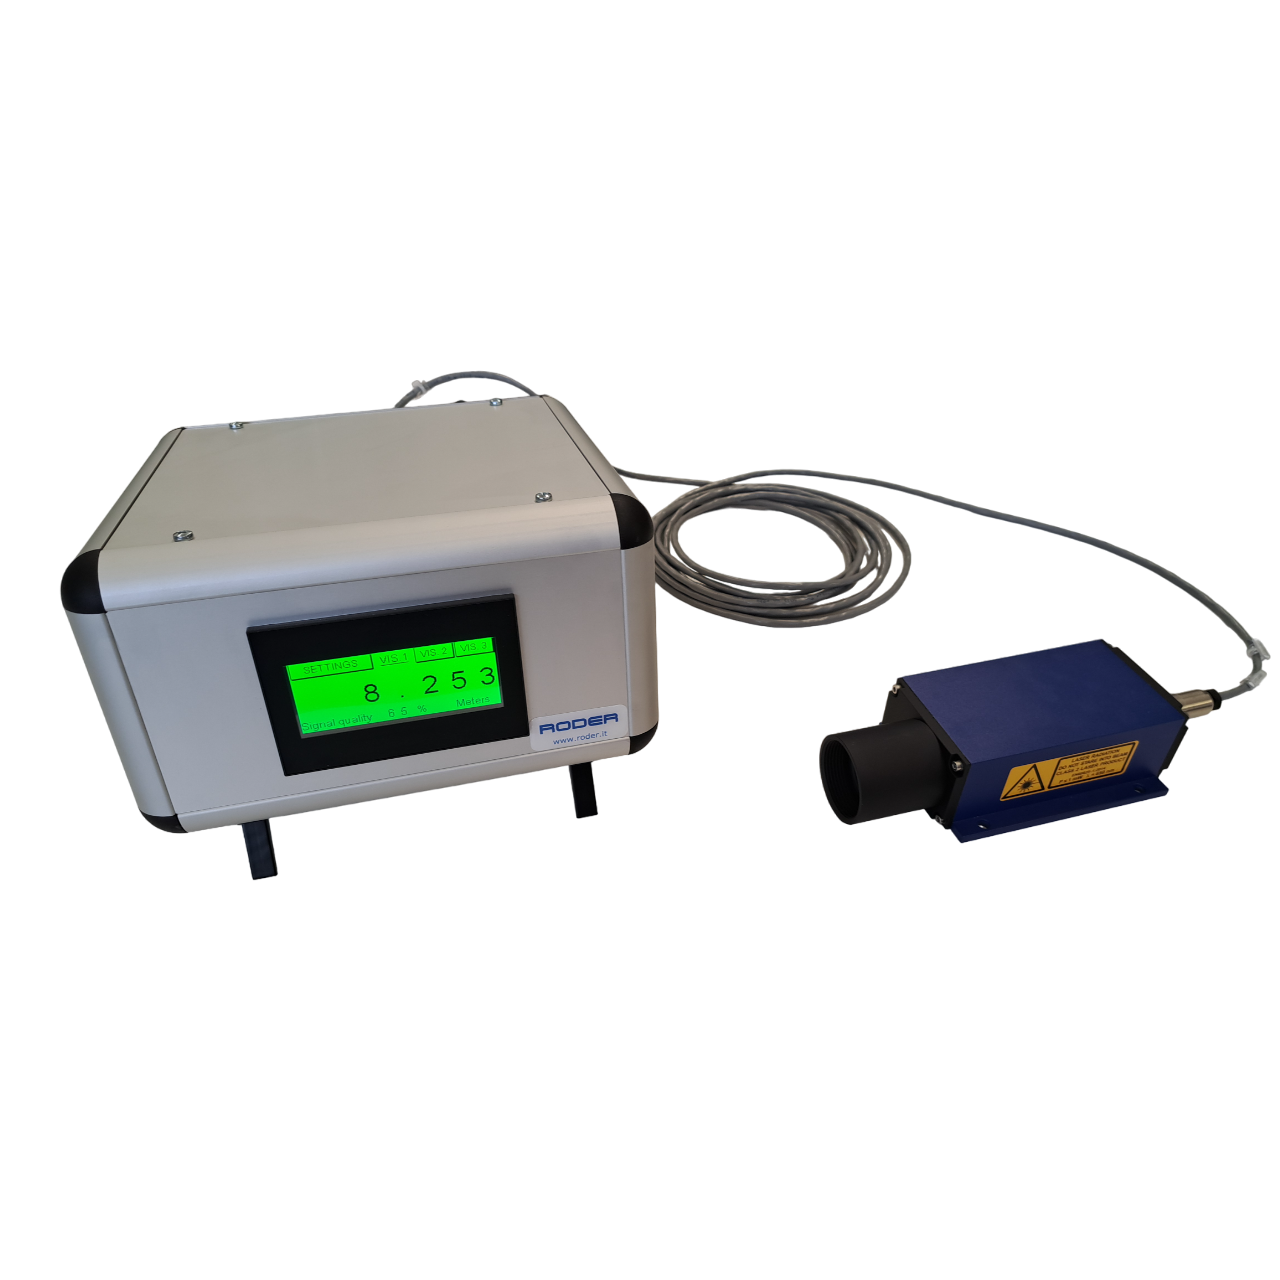 Kit applicativo per distanziometri laser per la misura di distanza, spostamento e deformazione